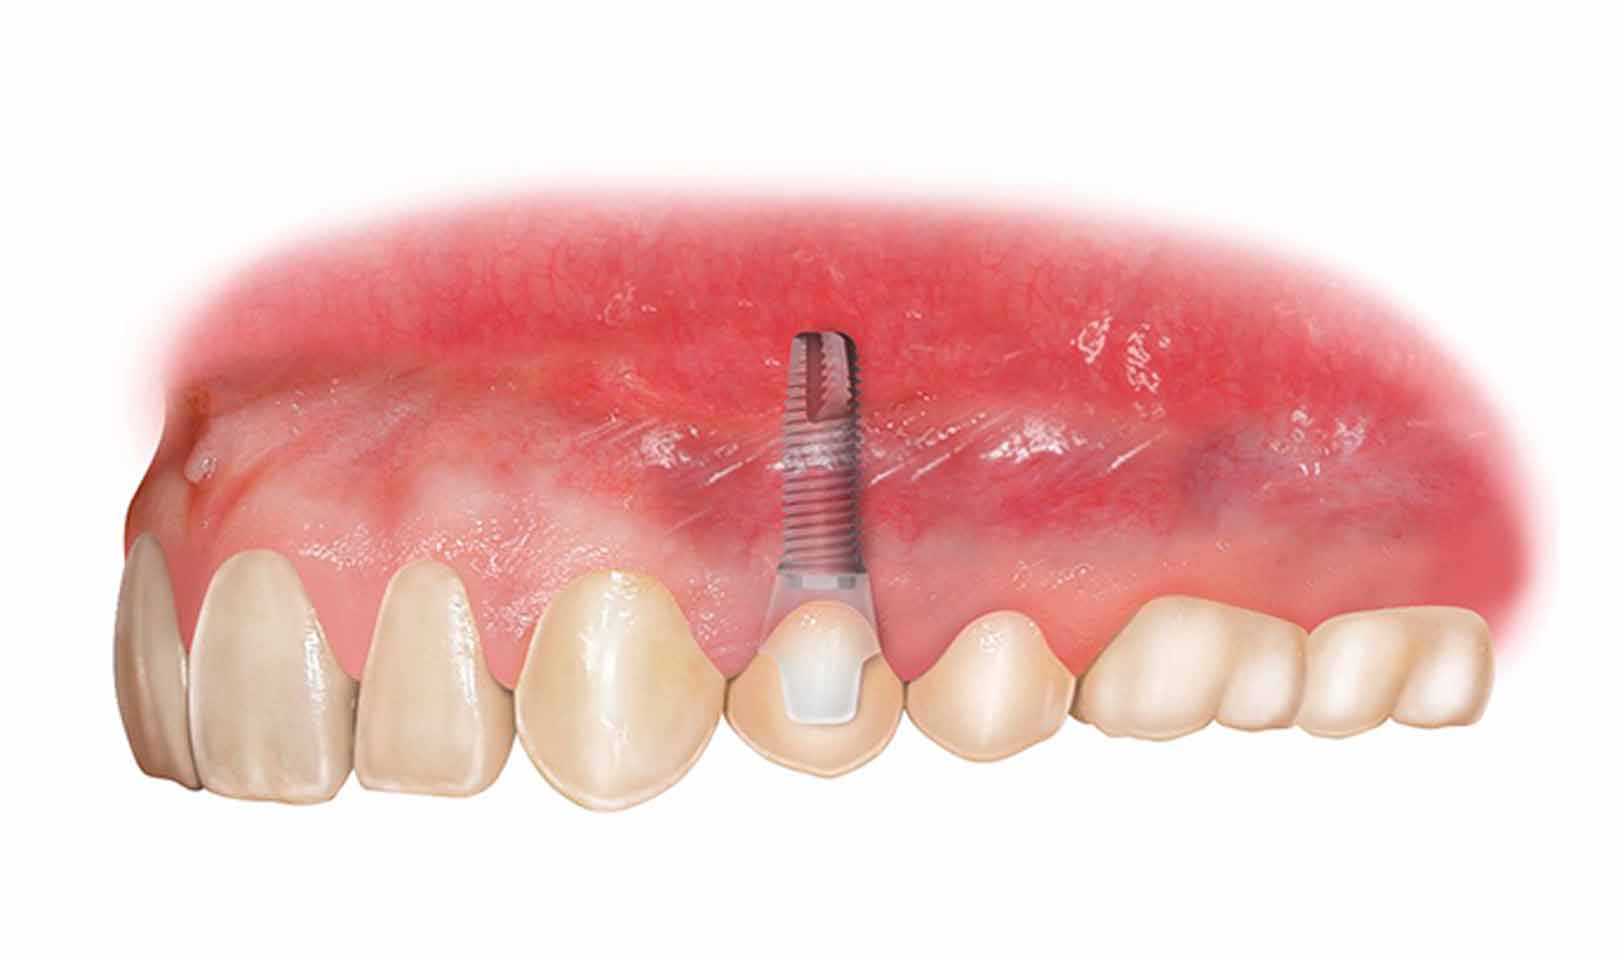 Mini impianto dentale